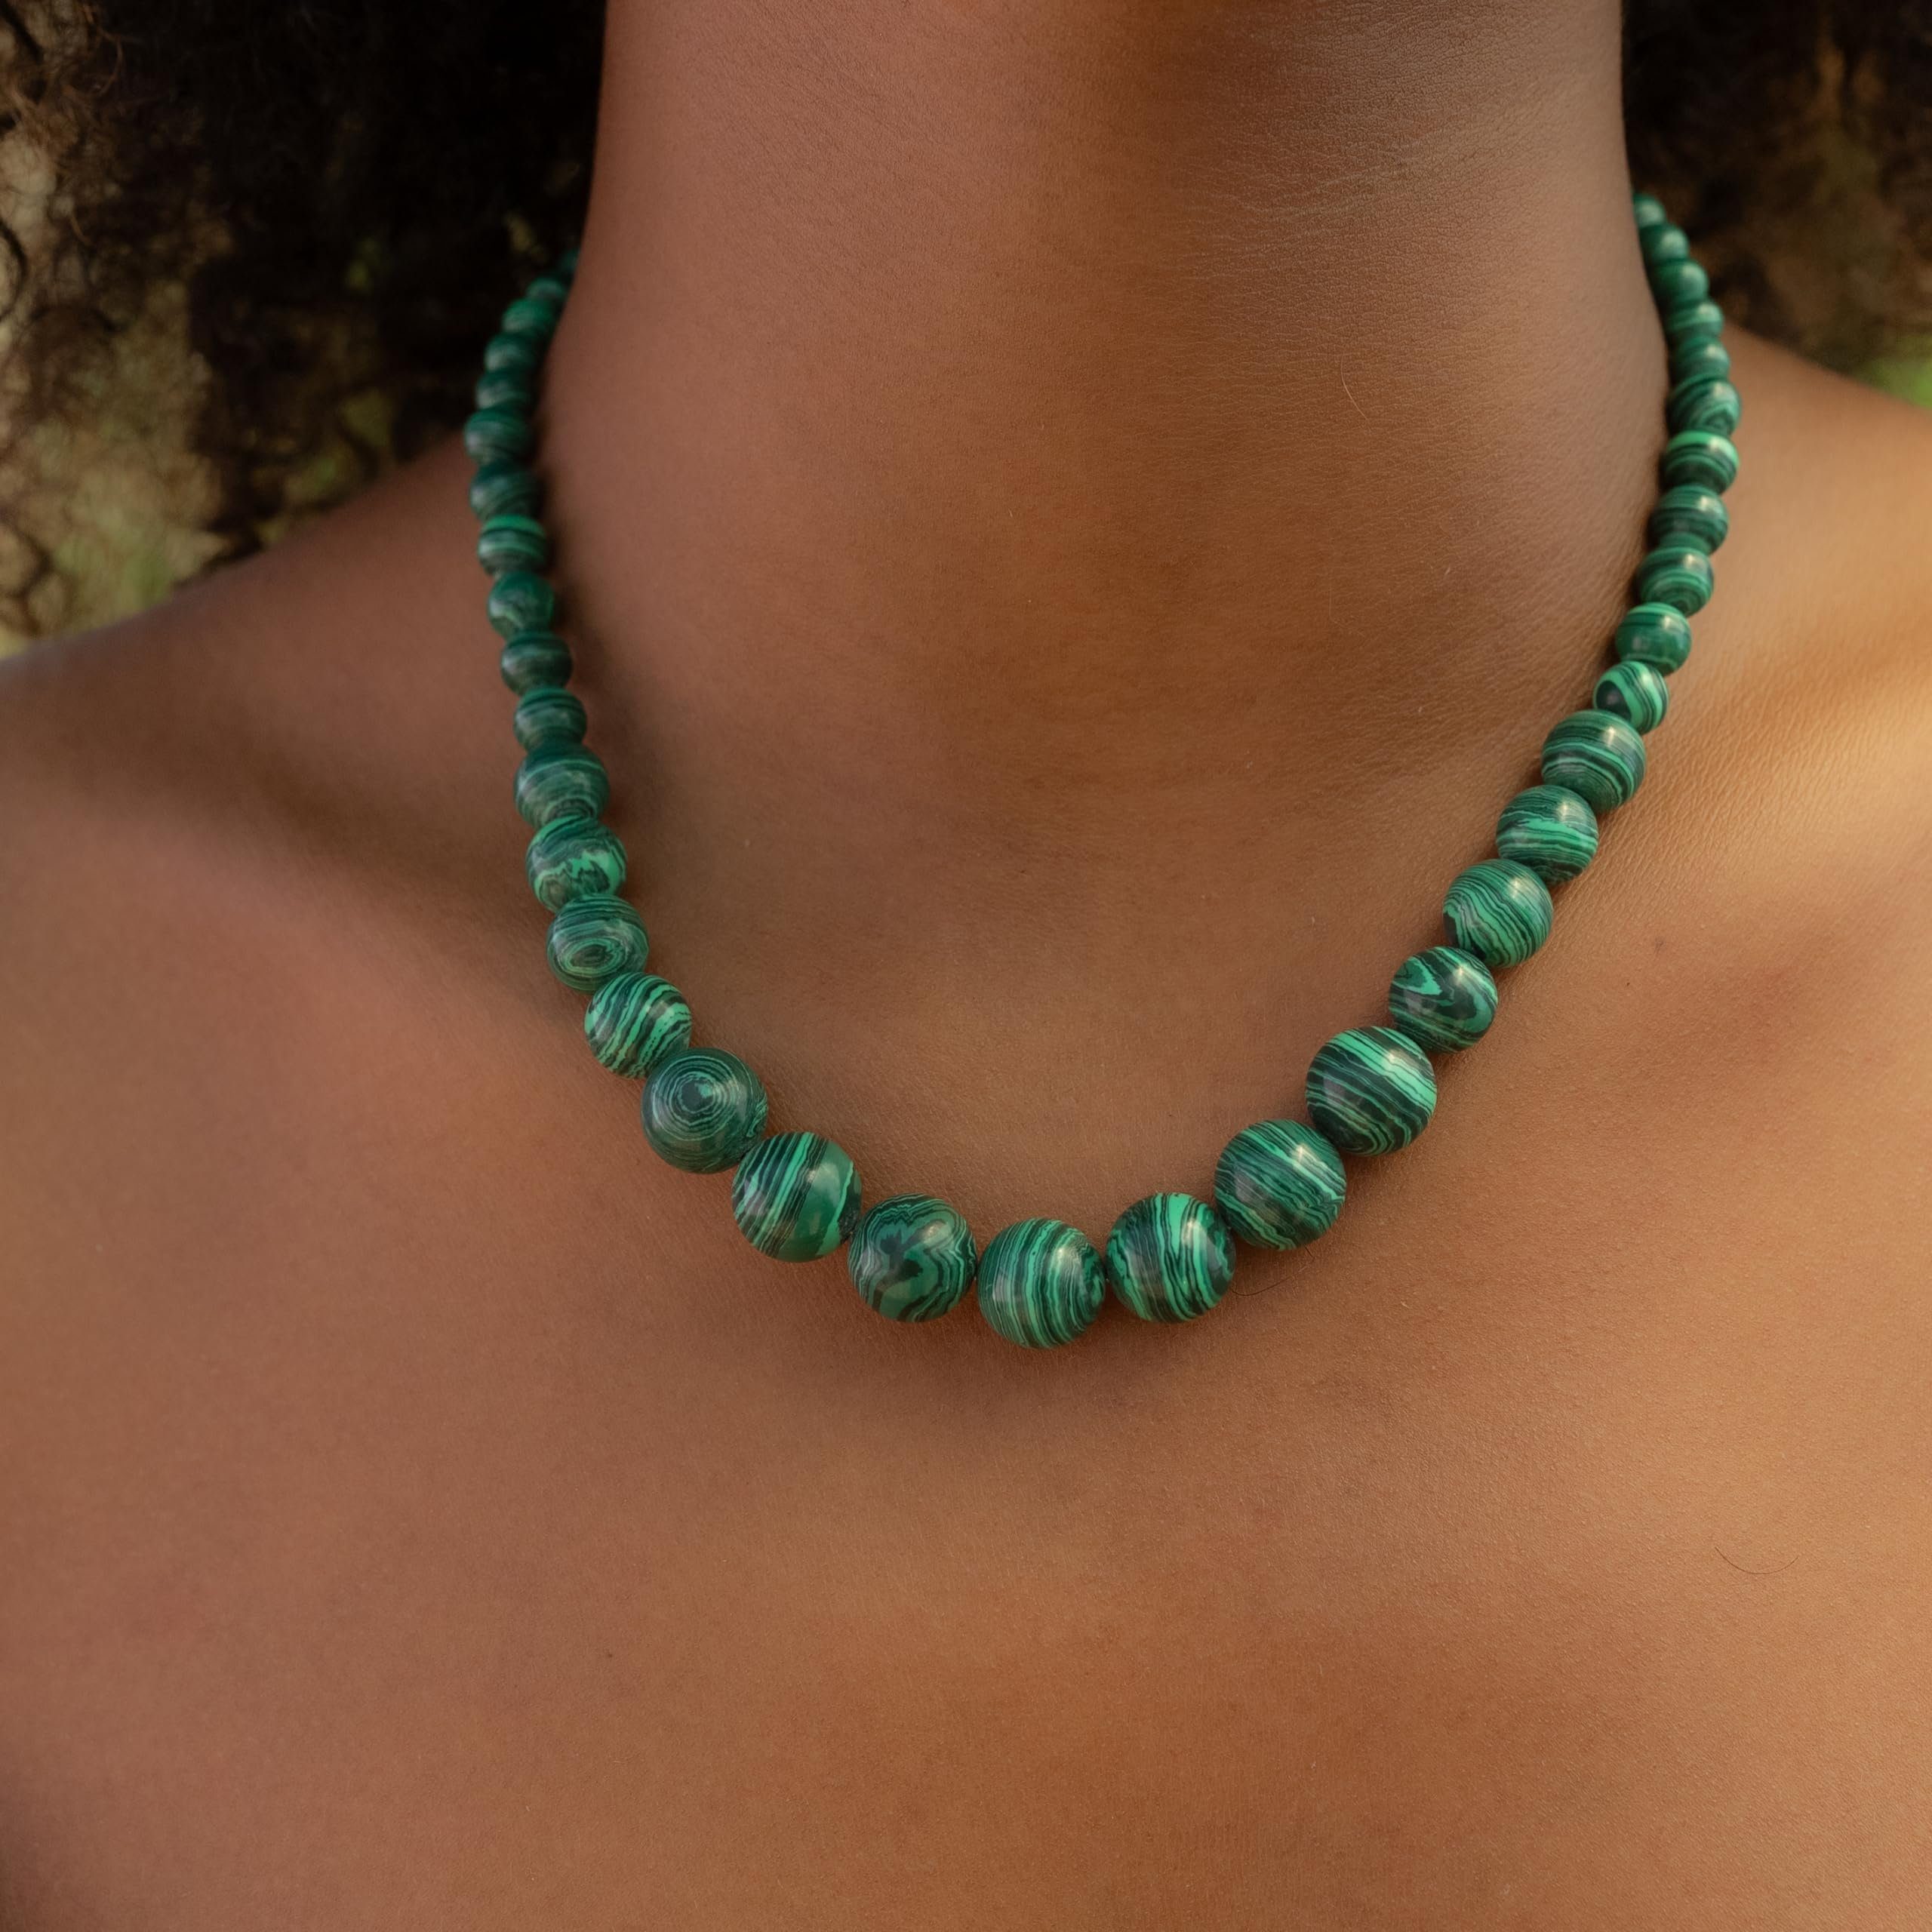 Made by Nami Perlenkette Bunte Perlenkette Damen aus echten Steinen mit Schlangenmaserung, Boho Schmuck 40 + 5 cm Länge